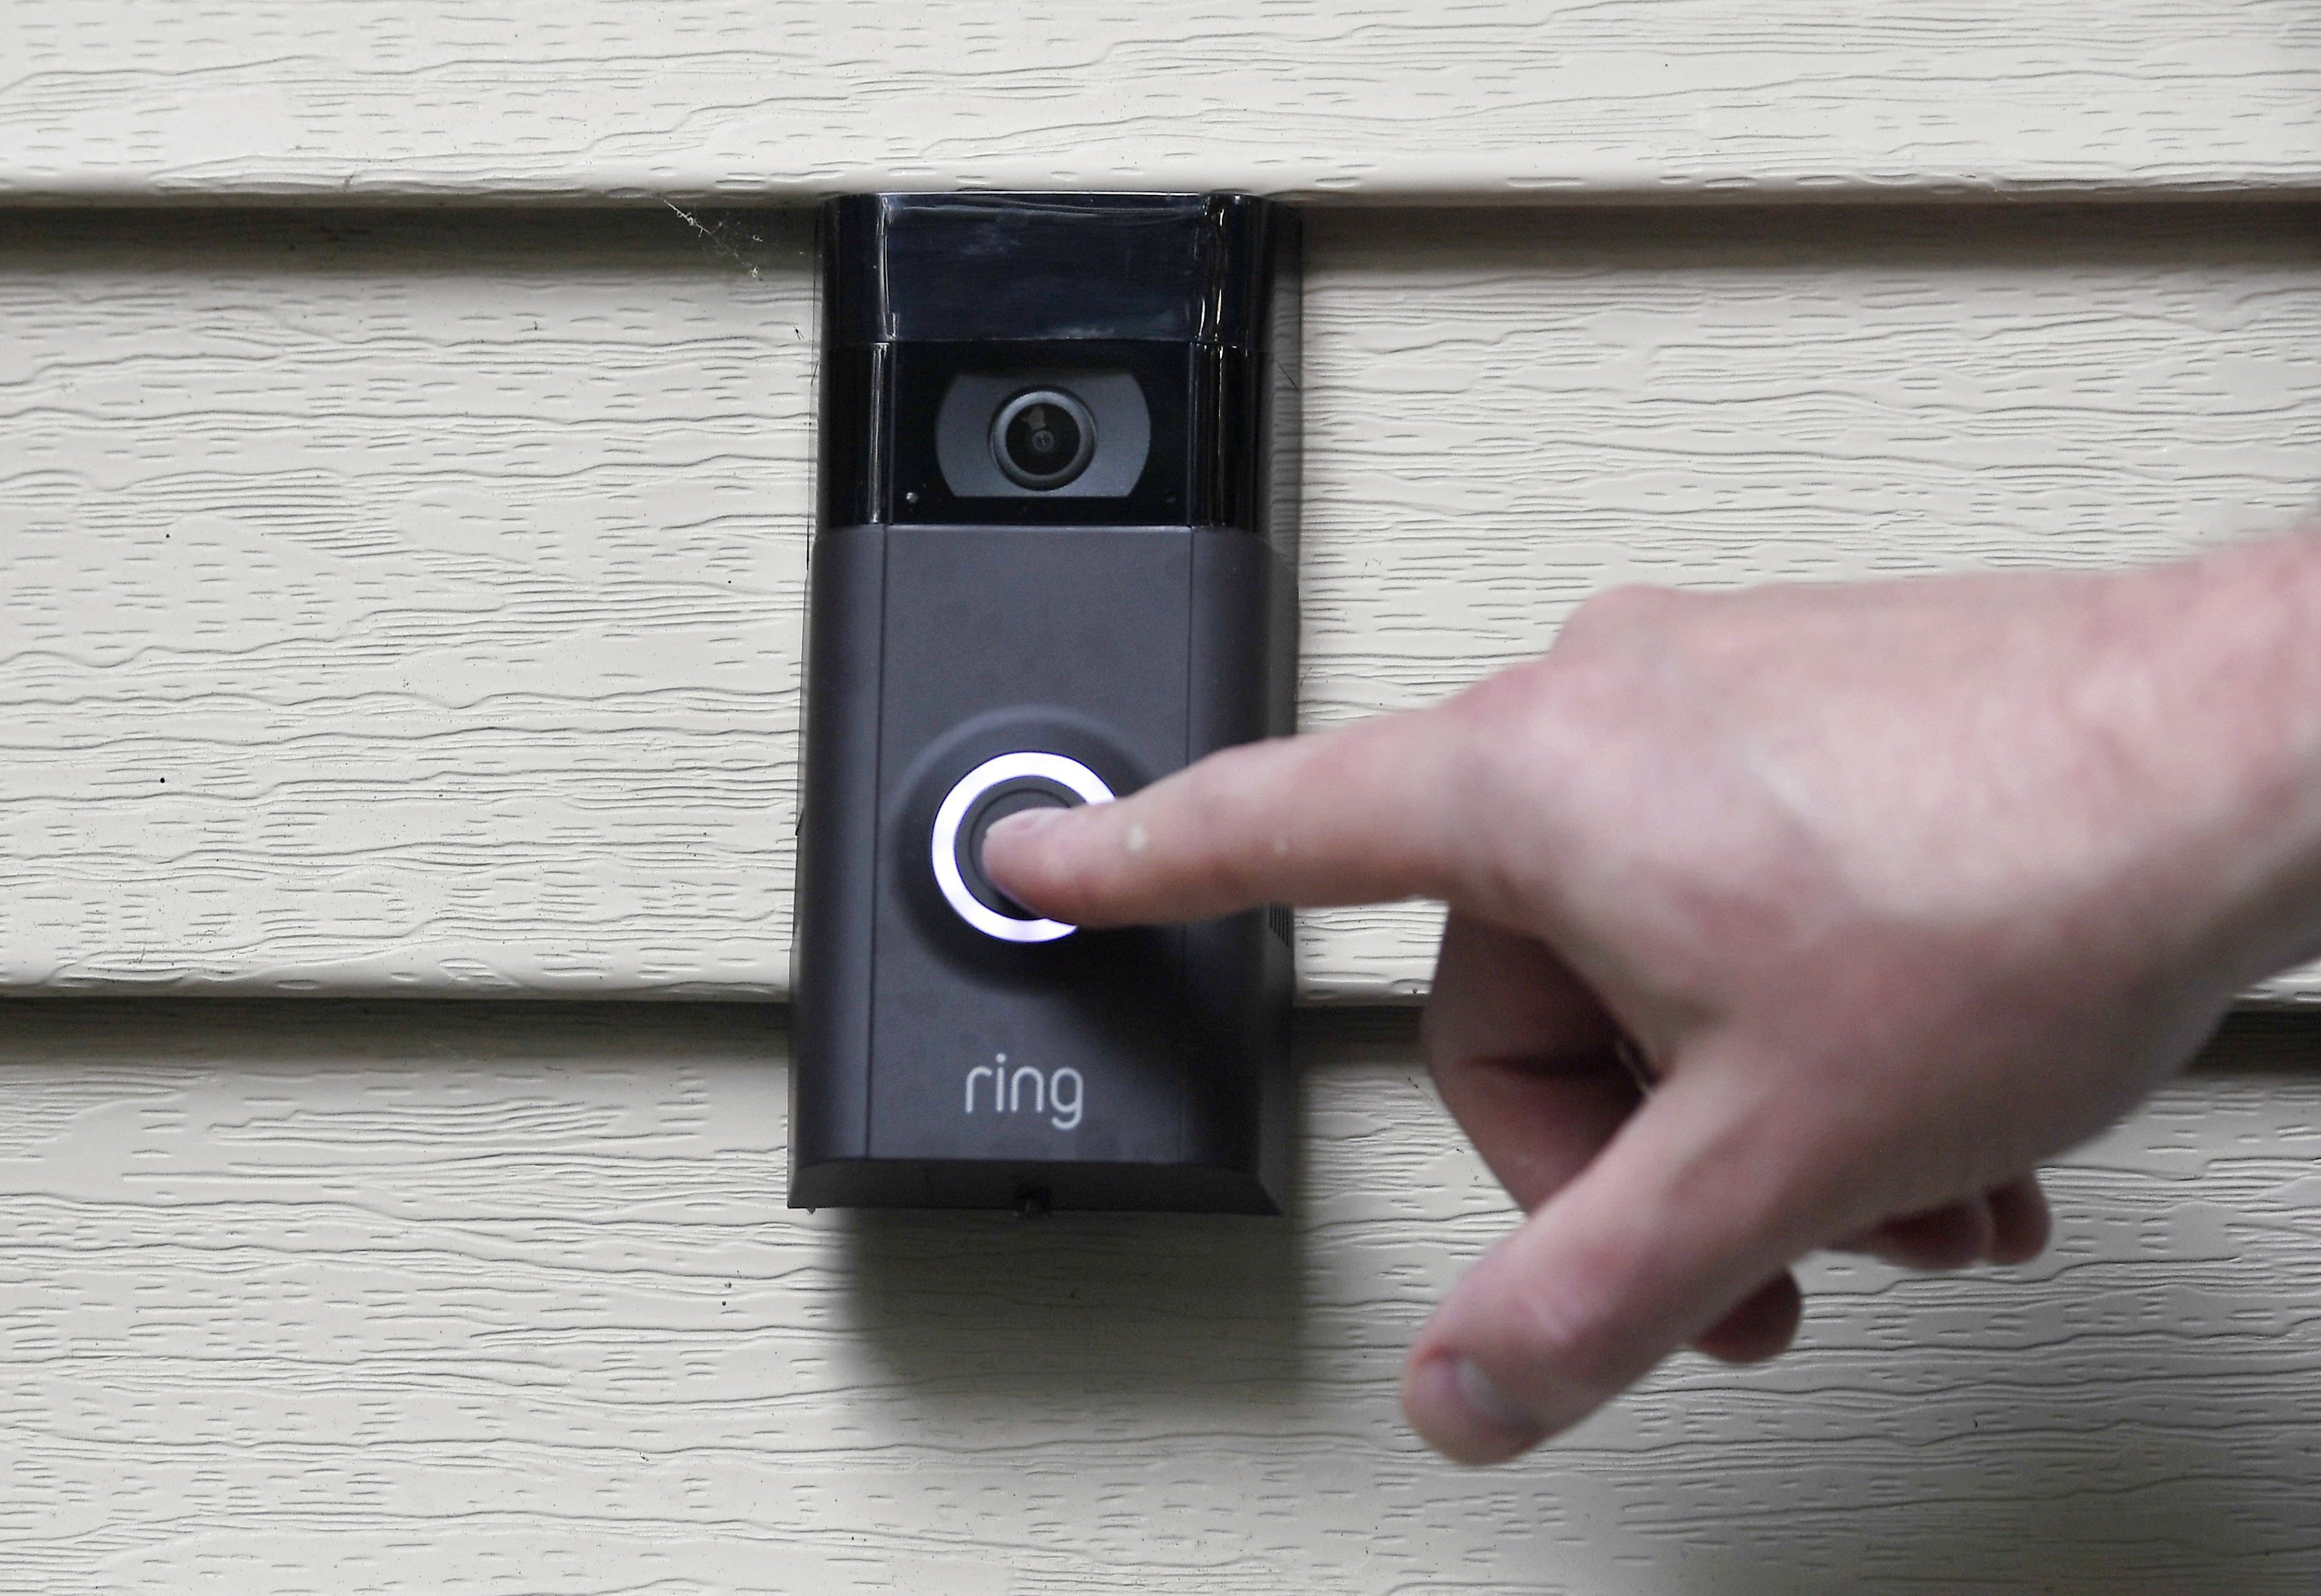 Doorbell Cameras-Police